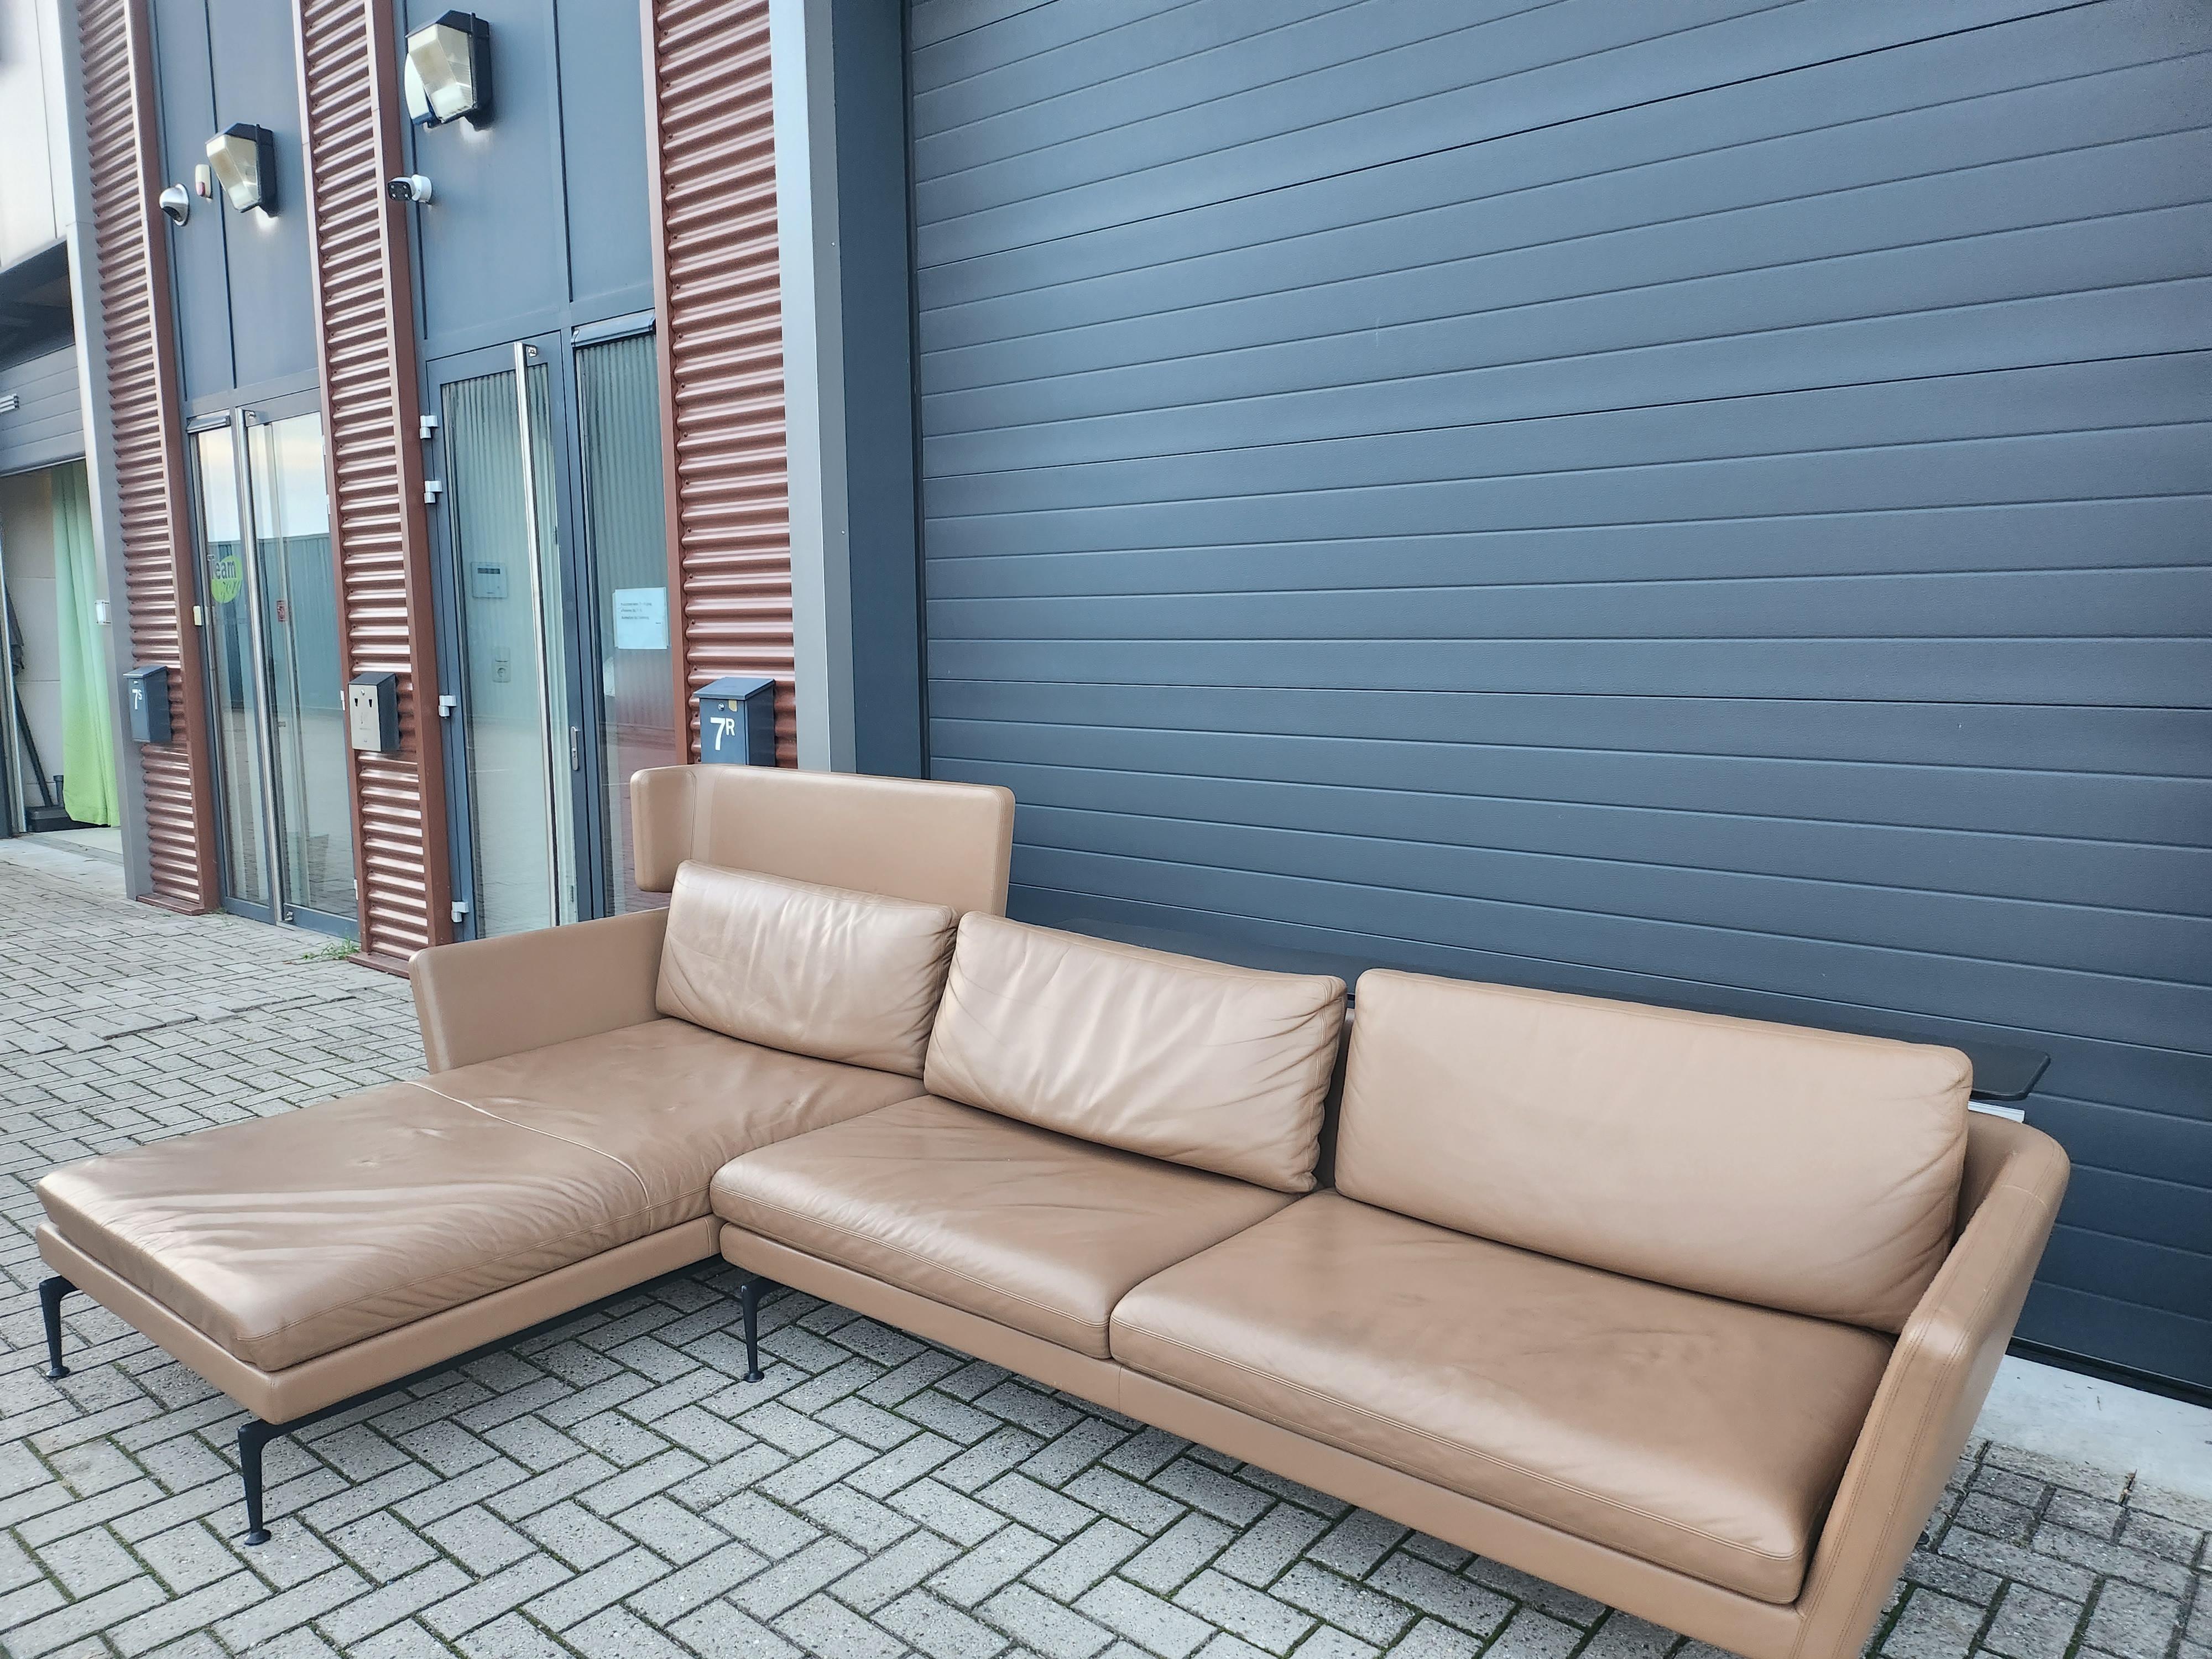 German Vitra - Suita Sofa by Antonio Citterio - Camel Premium F Leather